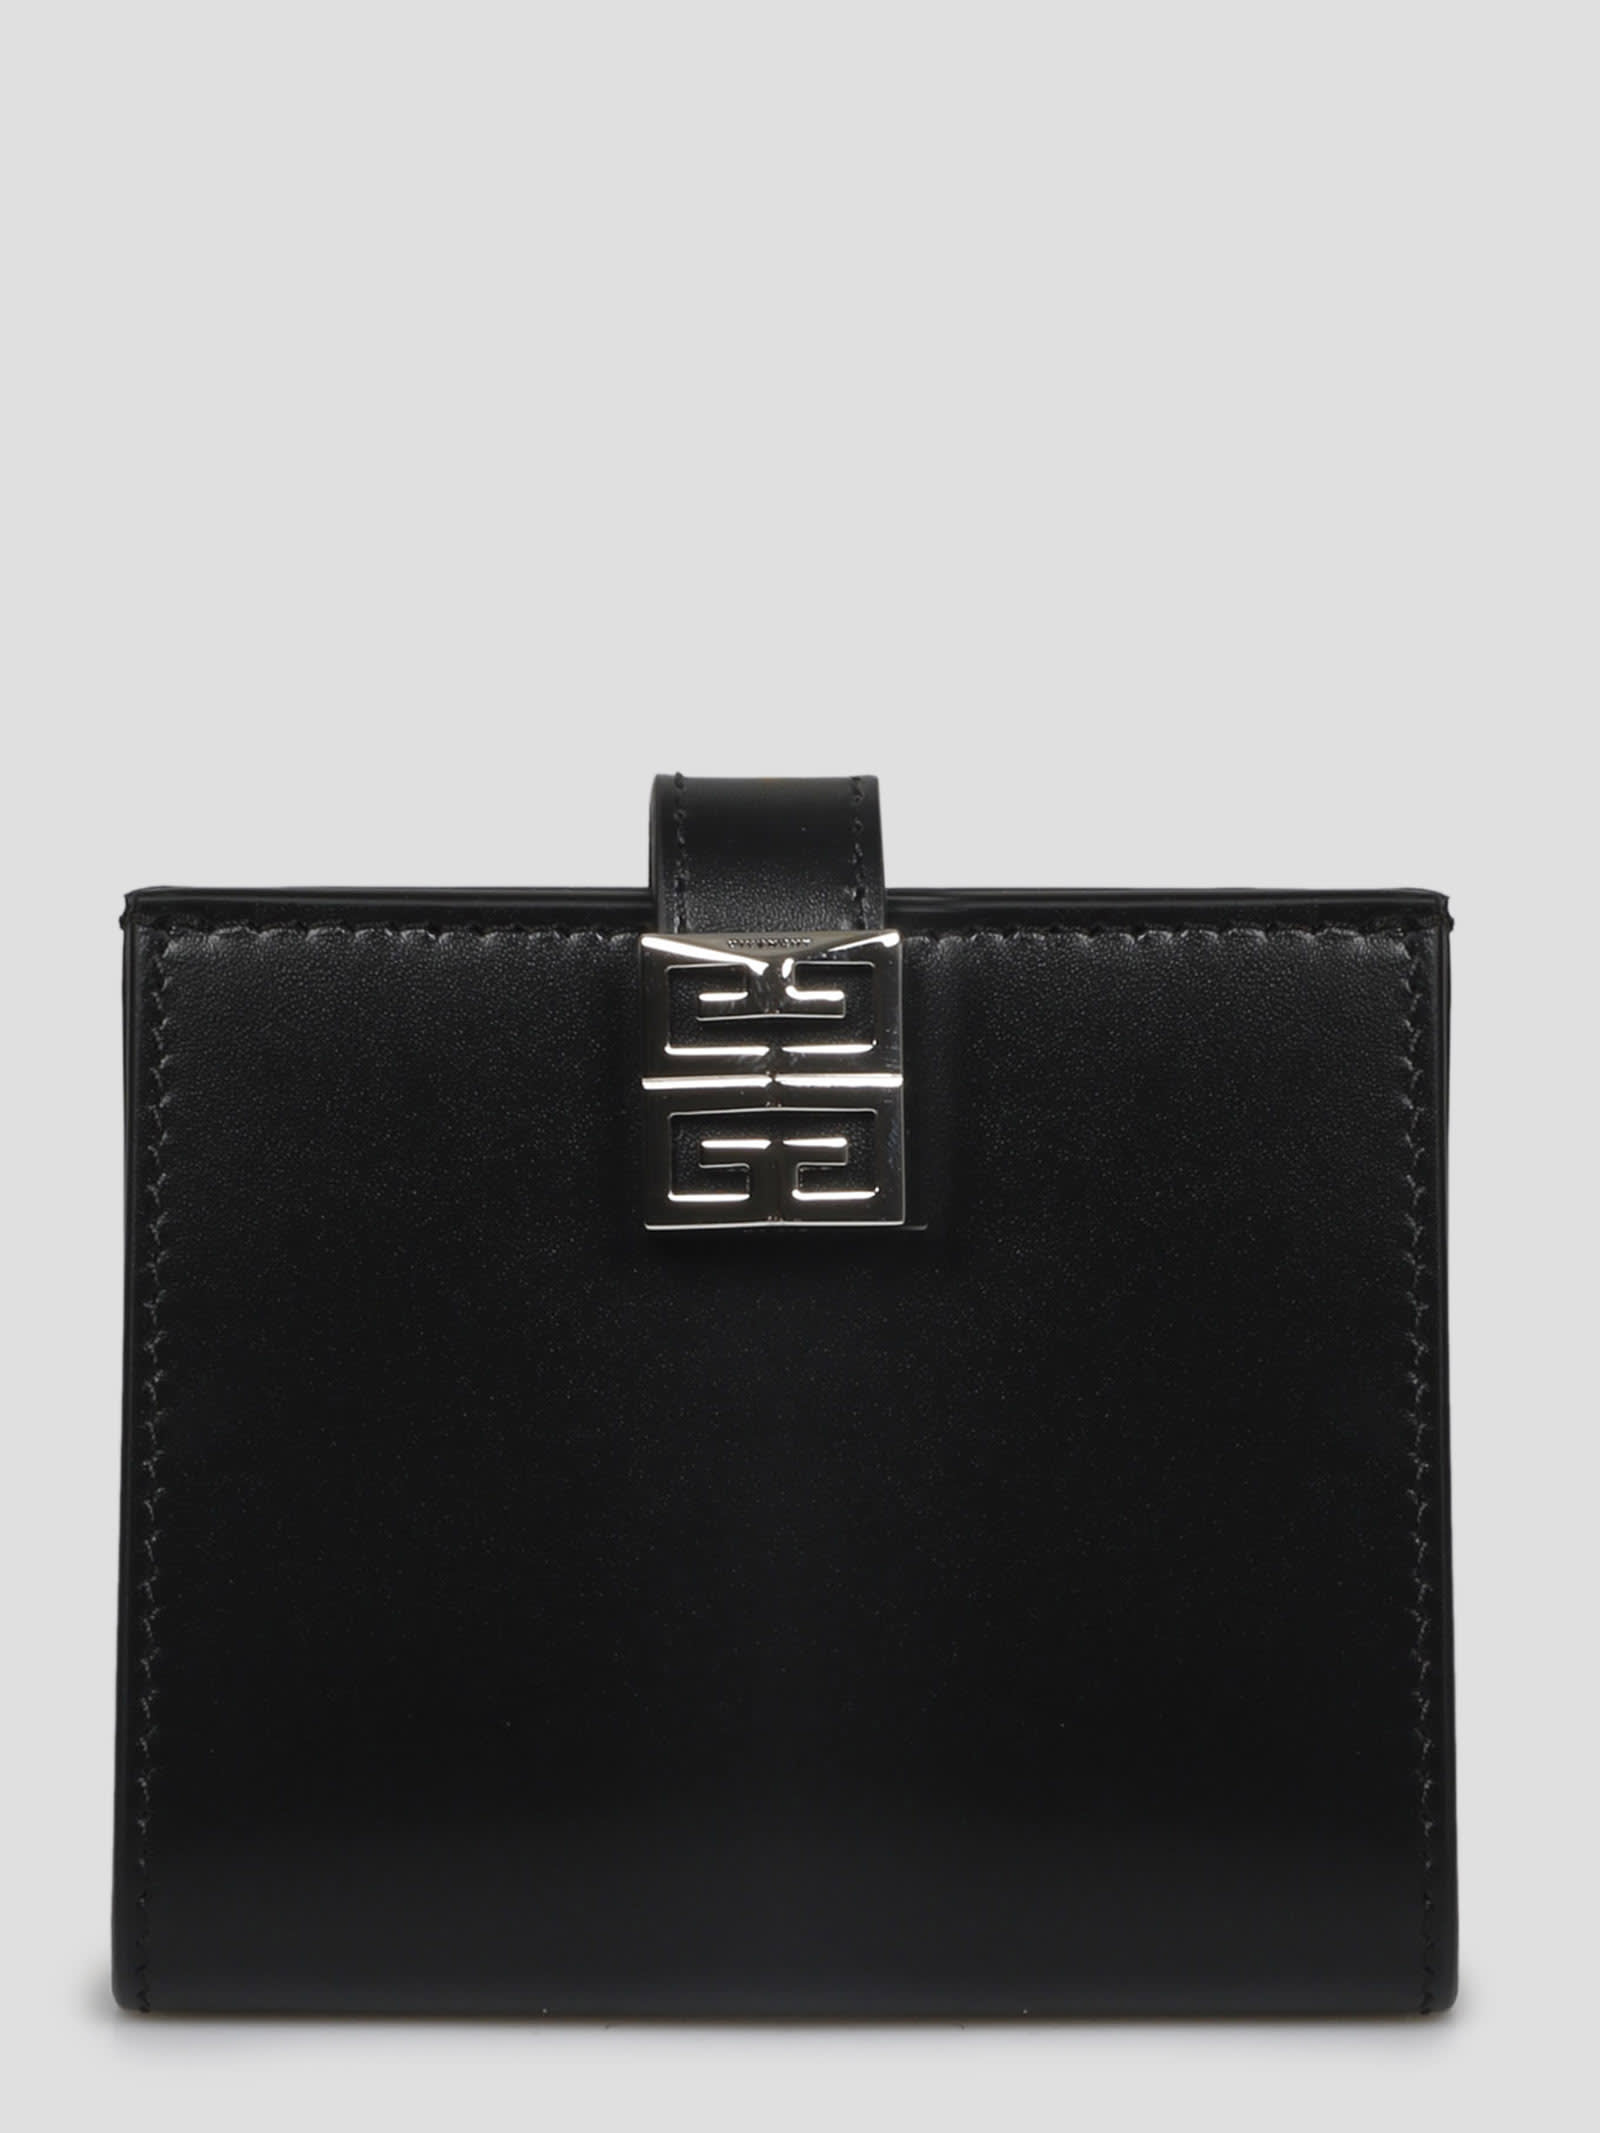 Givenchy 4g Wallet